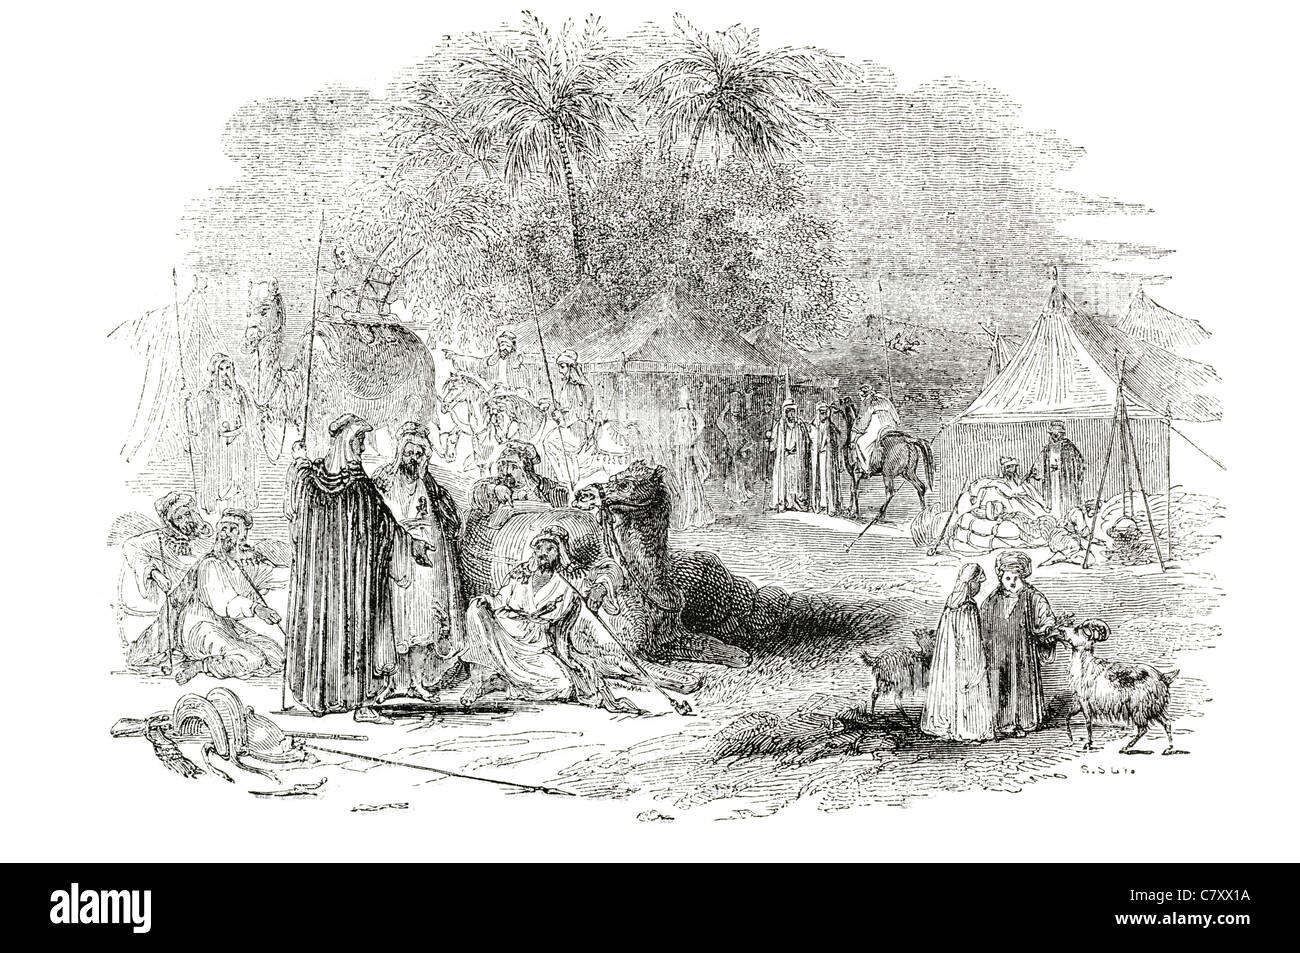 Campement de tentes camp de bédouins d'affaires du commerce de l'esclavage esclaves des gens d'échange de trafic trafic chameau tribu du désert Banque D'Images